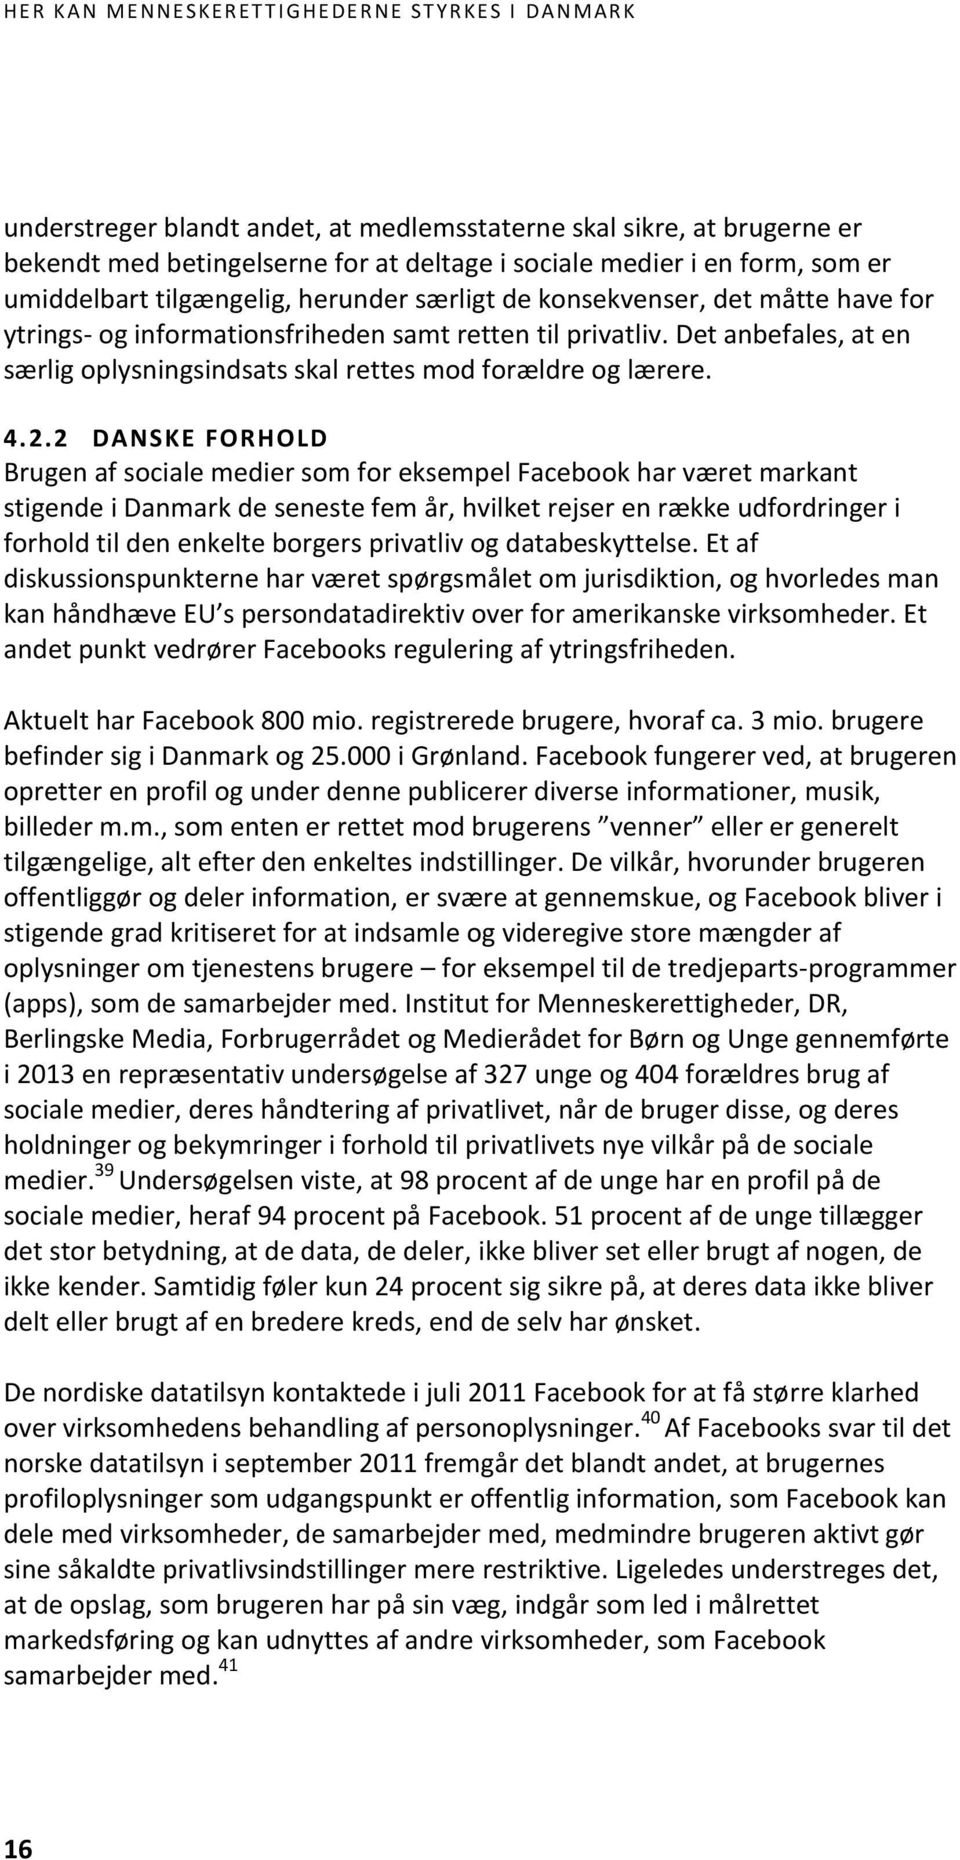 2 DANSKE FORHOLD Brugen af sociale medier som for eksempel Facebook har været markant stigende i Danmark de seneste fem år, hvilket rejser en række udfordringer i forhold til den enkelte borgers